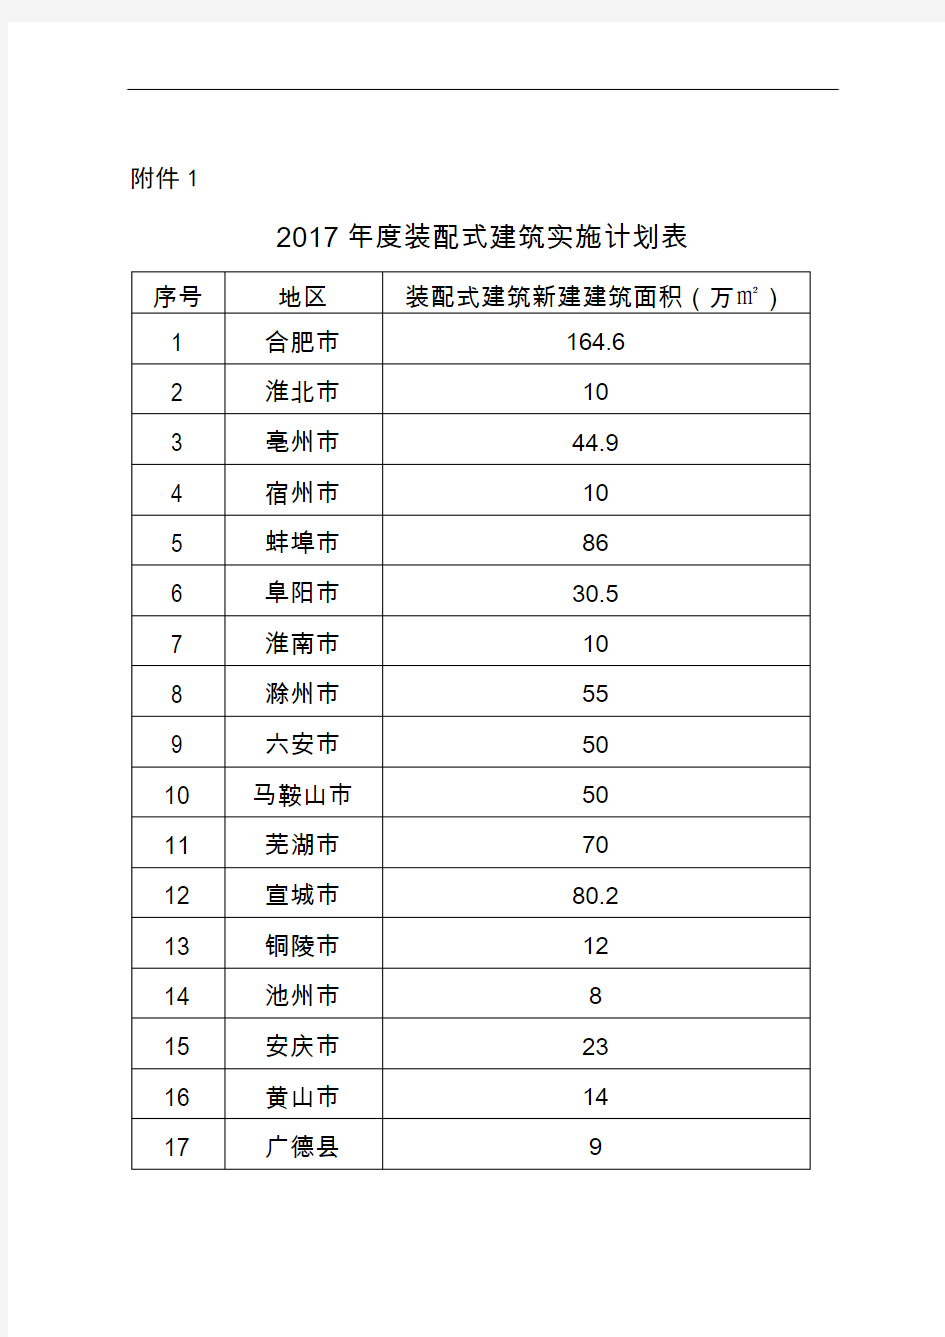 1、2017年度装配式建筑实施计划表